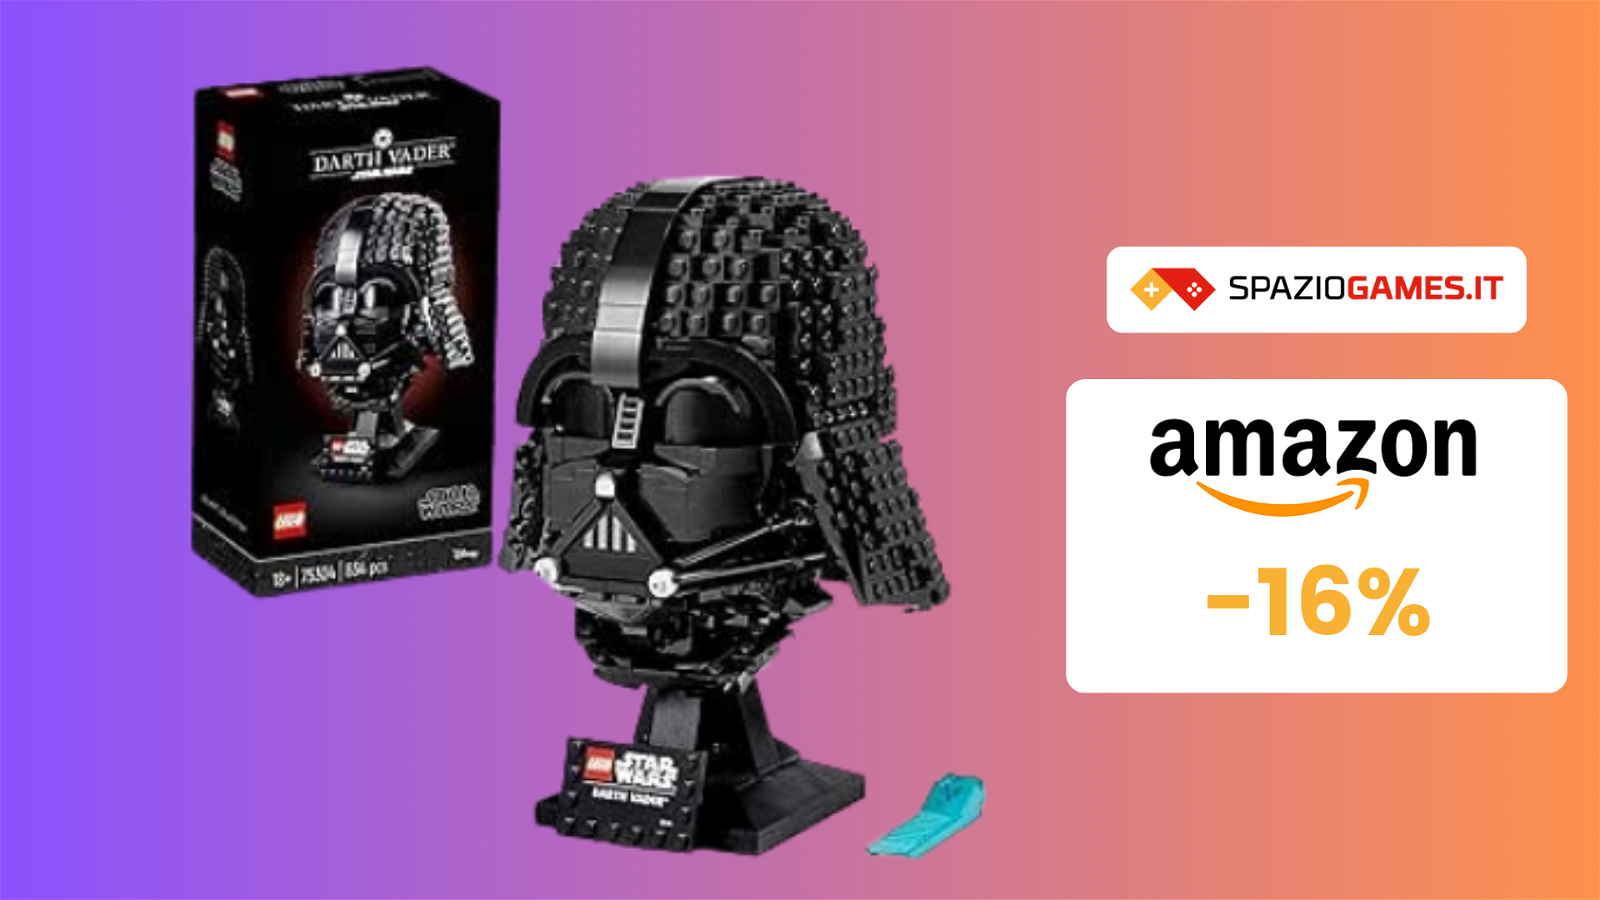 Il casco da collezione Darth Vader LEGO in OFFERTA a 67€!